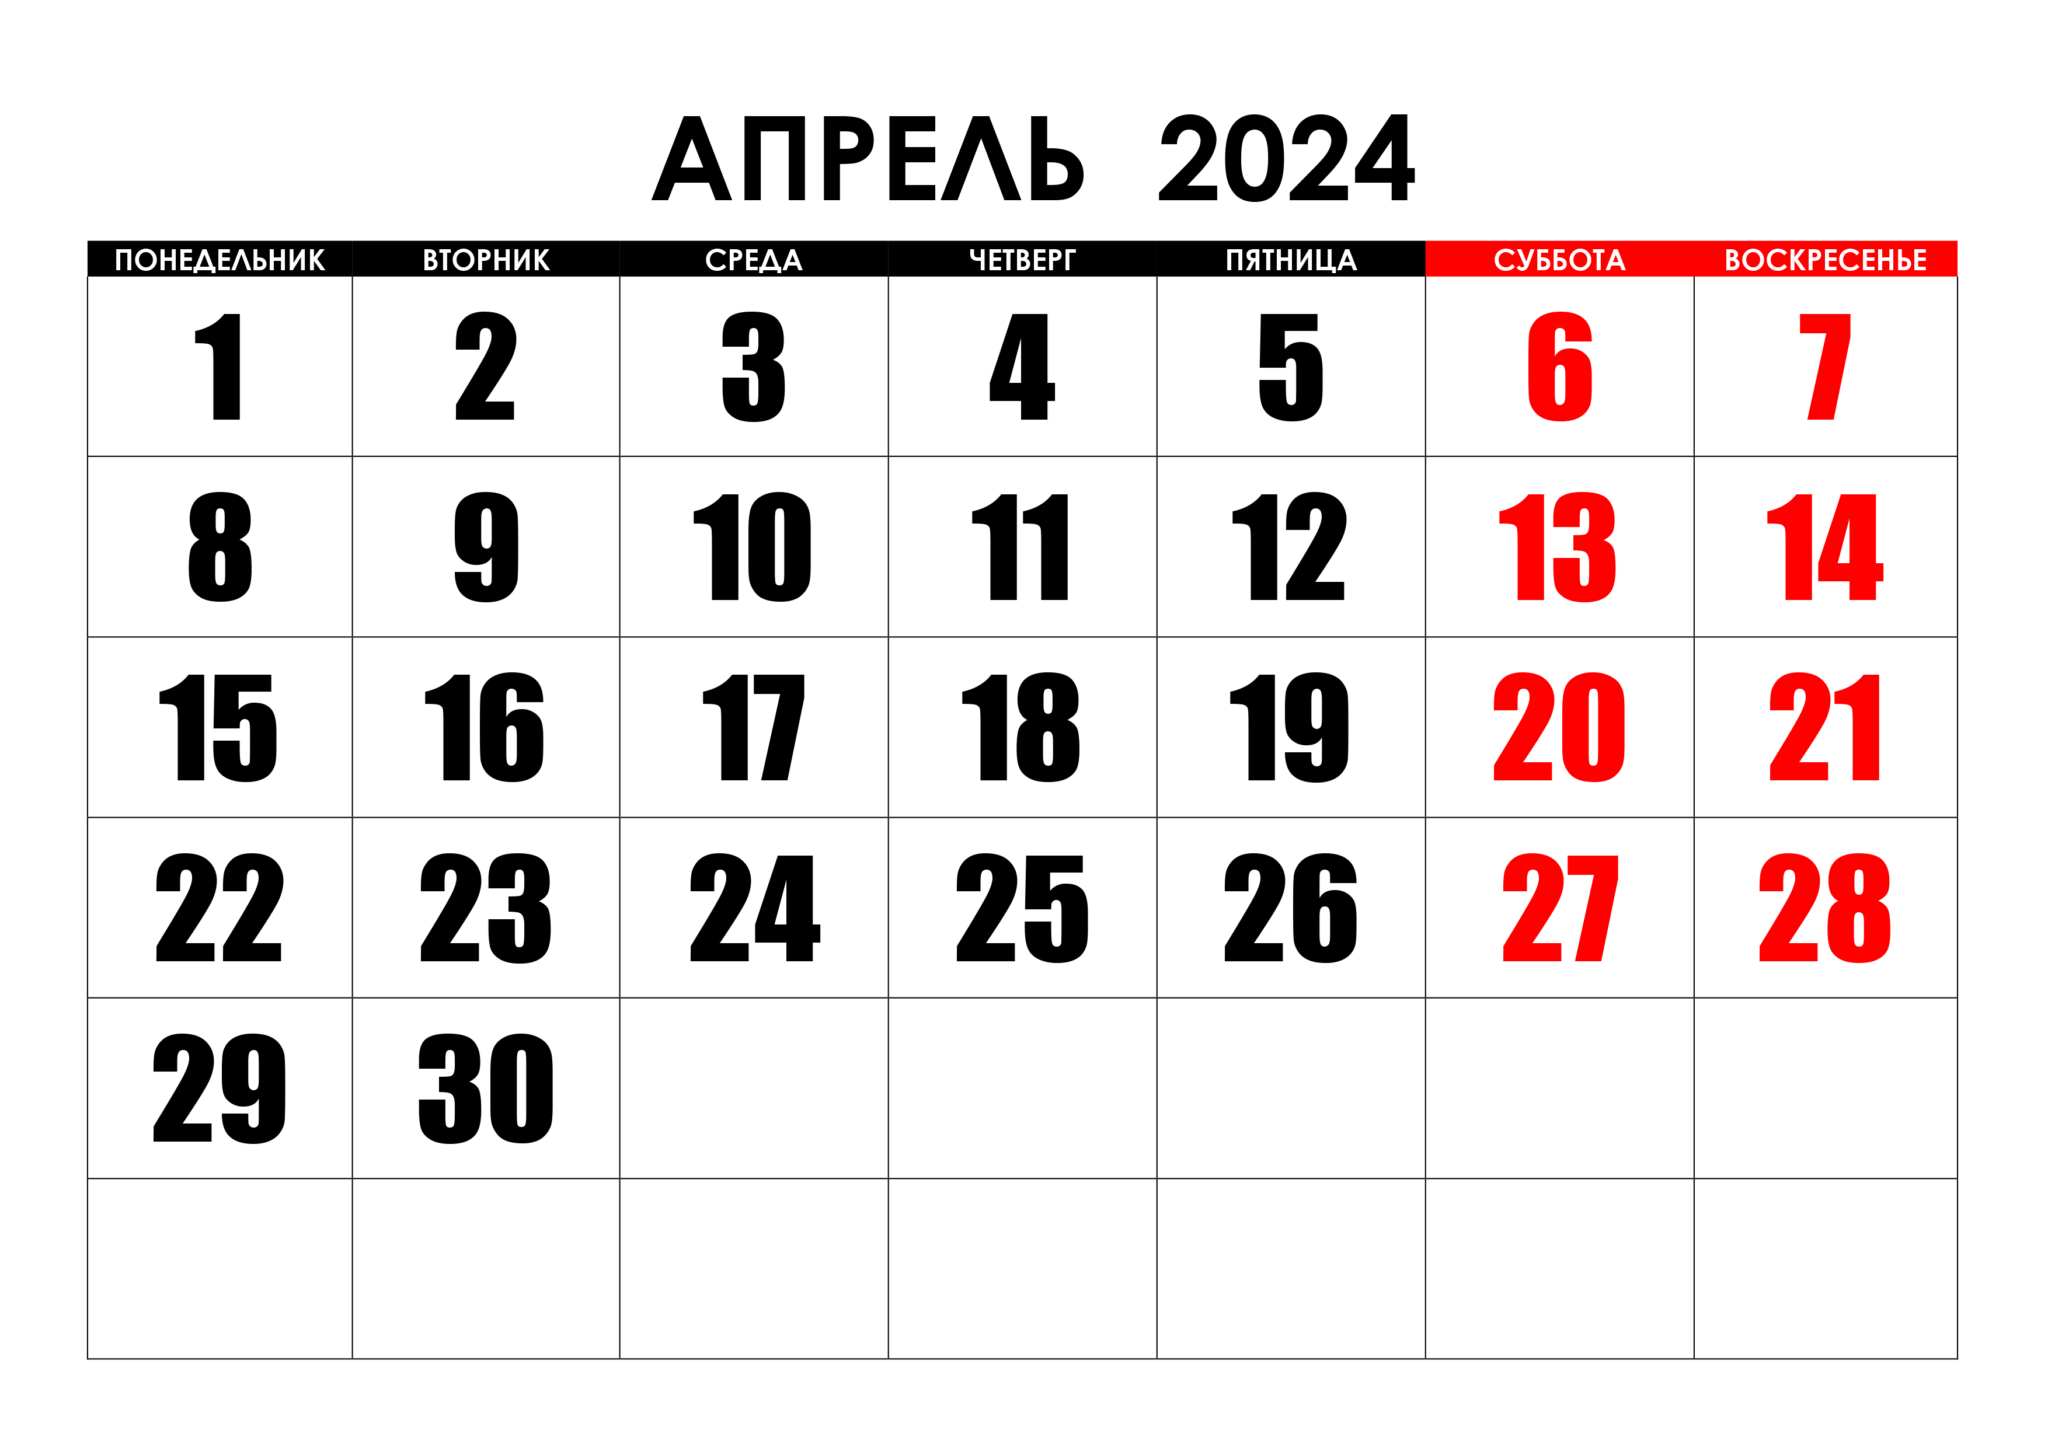 Ковид 2024 по дням. Календарь август 2022. Календарь на май 2022 года. Календарь на август 2022г. Календарь на пвгуст 2022года.